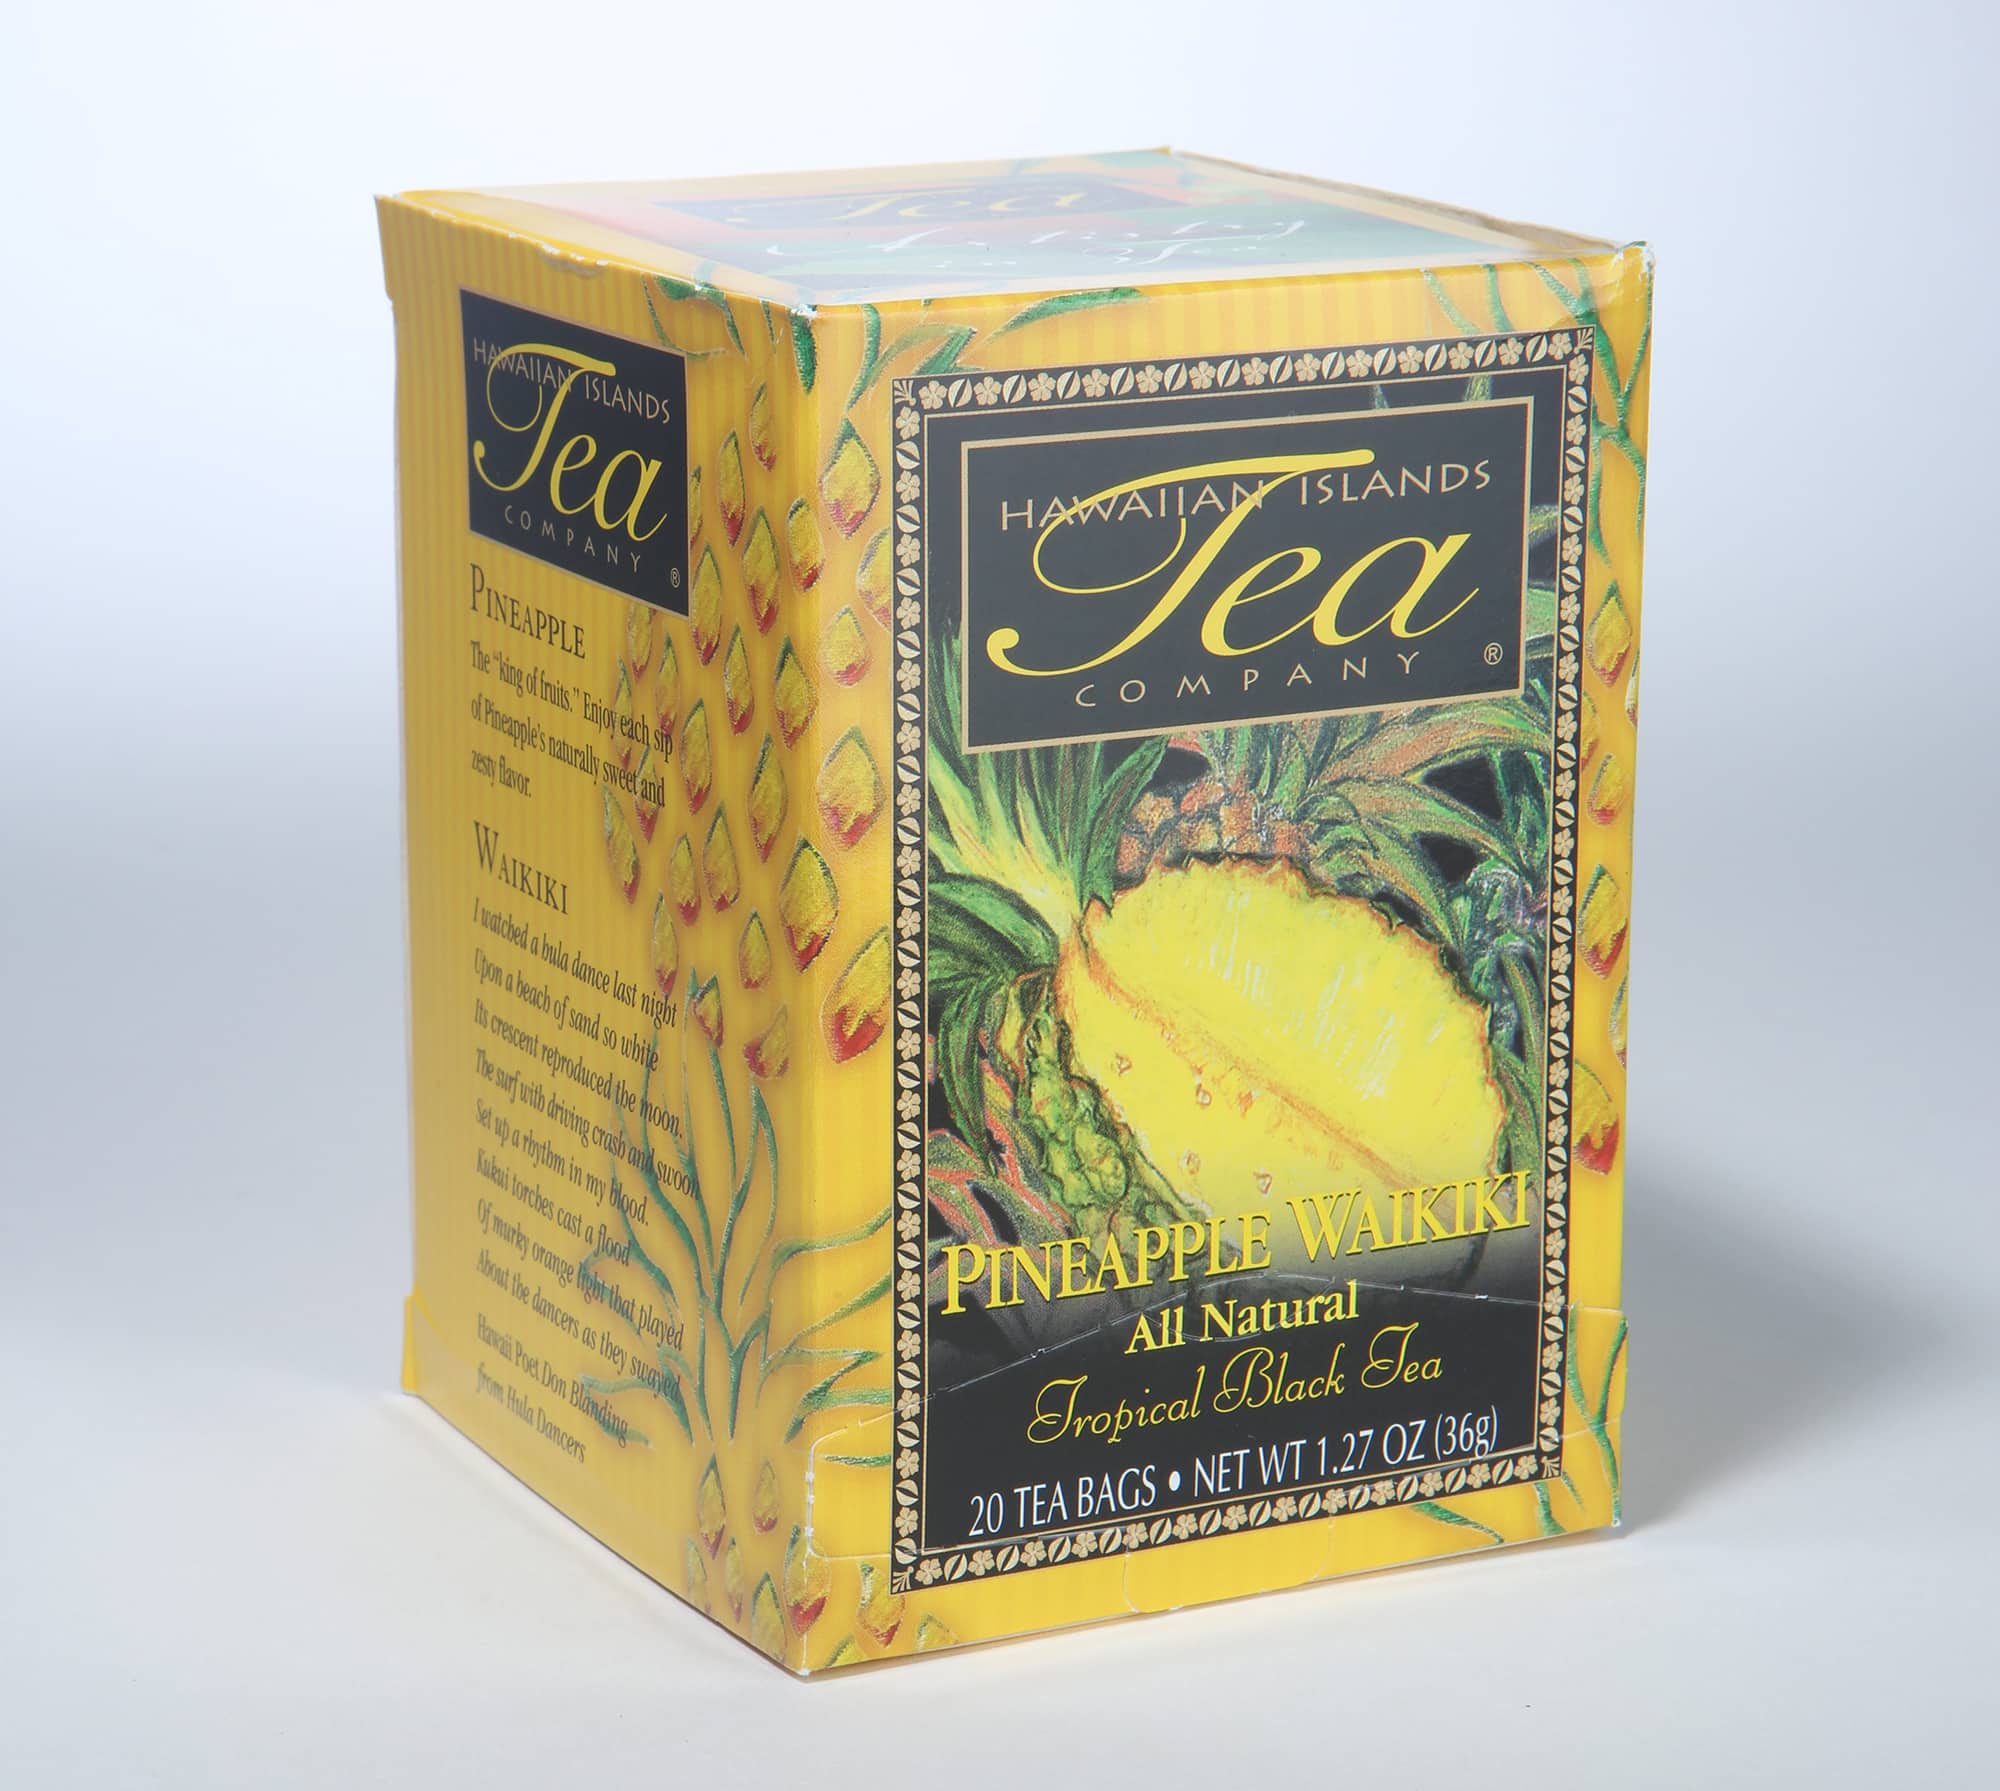 Best Tea in the World: Pineapple Tea